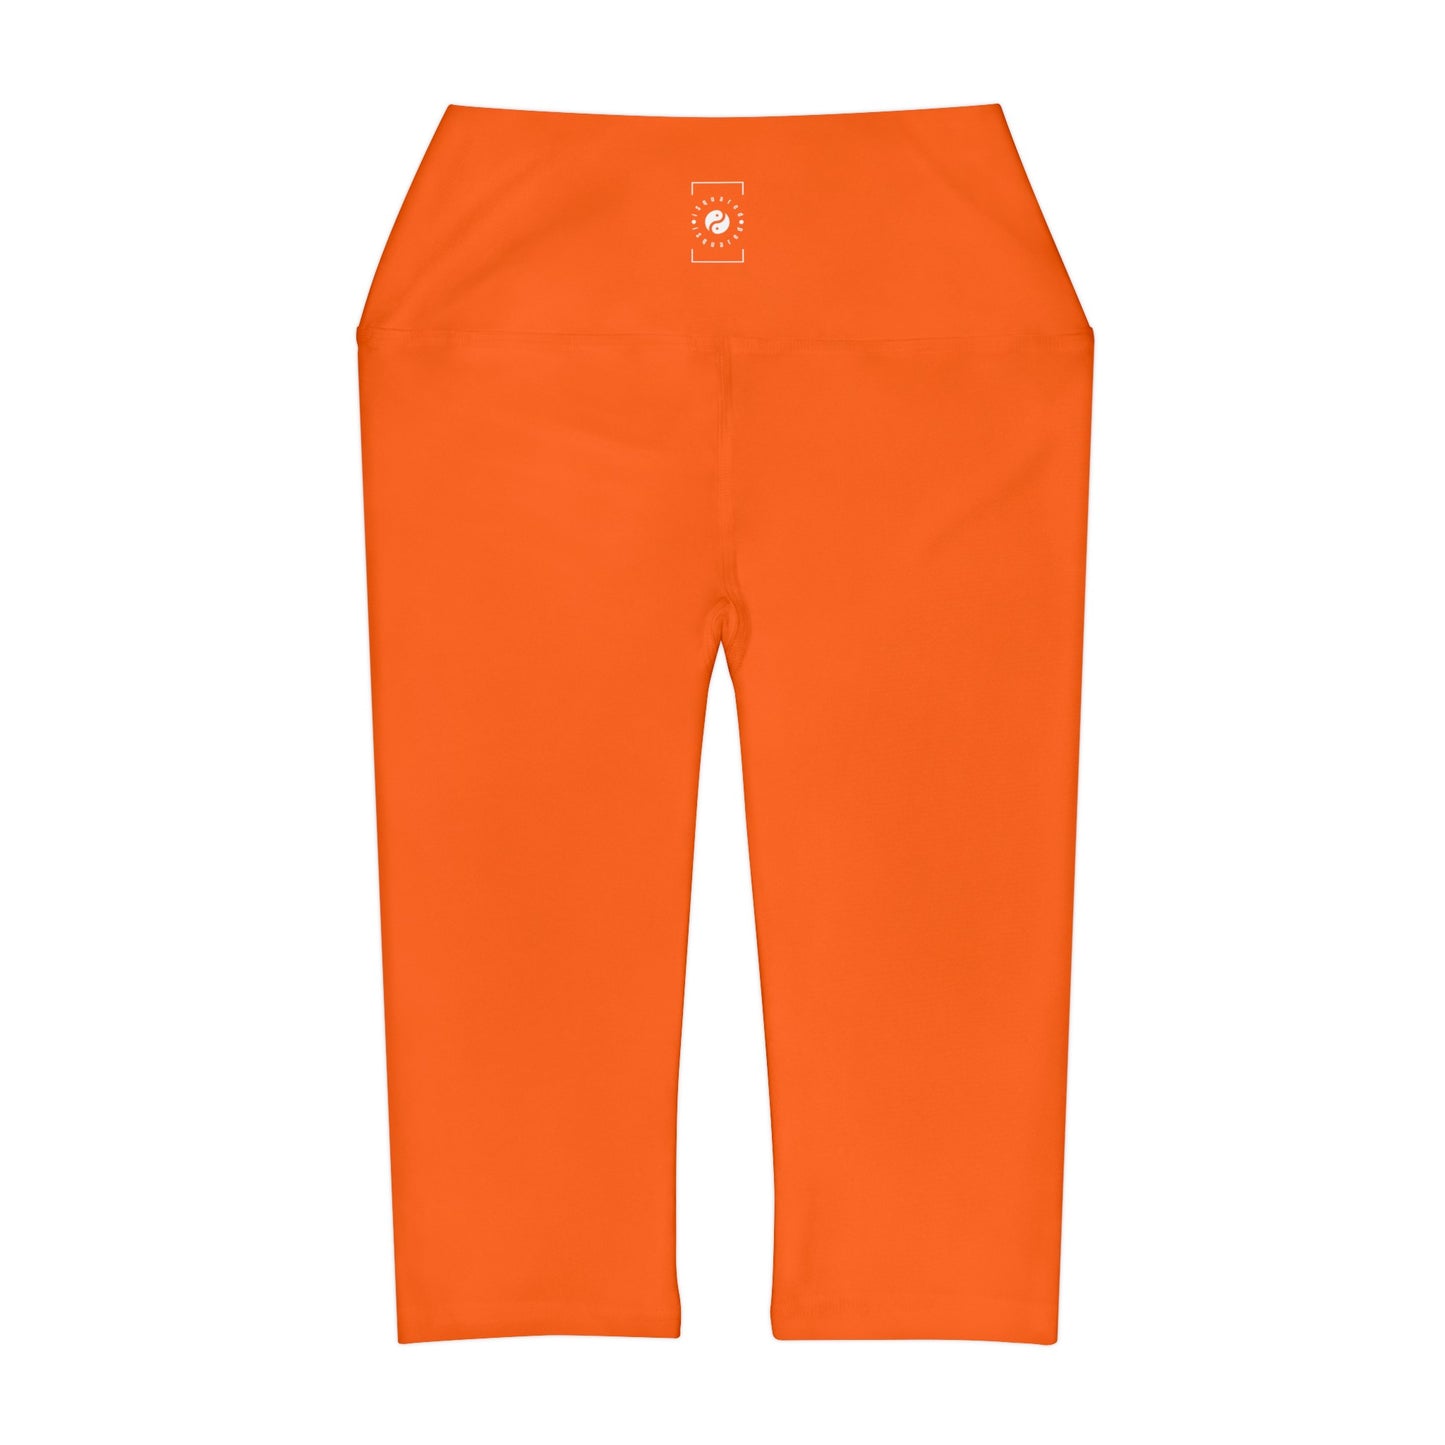 Orange fluo #FF6700 - Legging Capri taille haute